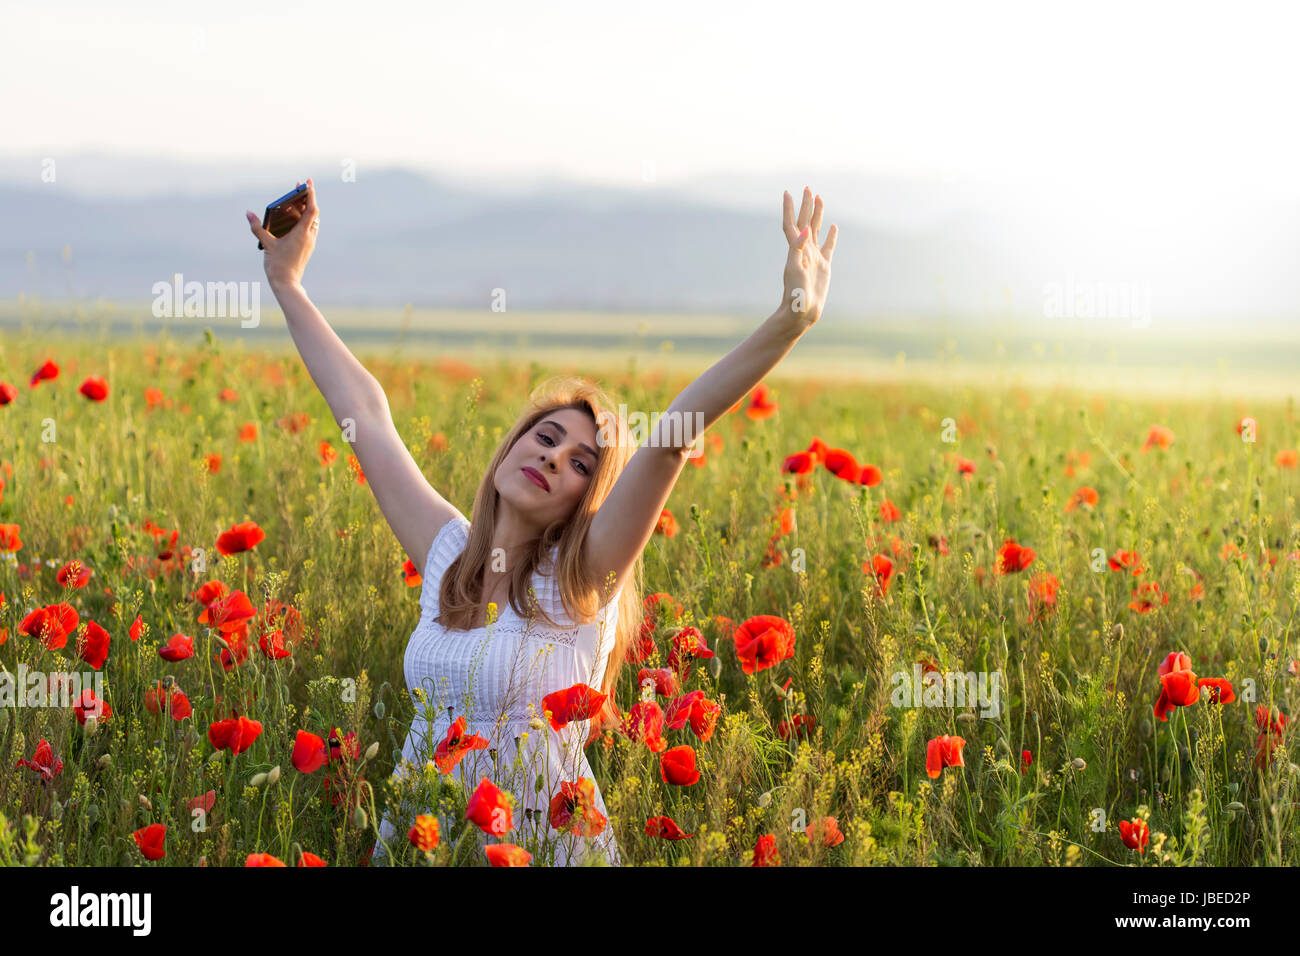 Ragazza giovane indossando abito bianco panno in piedi in un campo di papavero con le mani fino a telefono Foto Stock